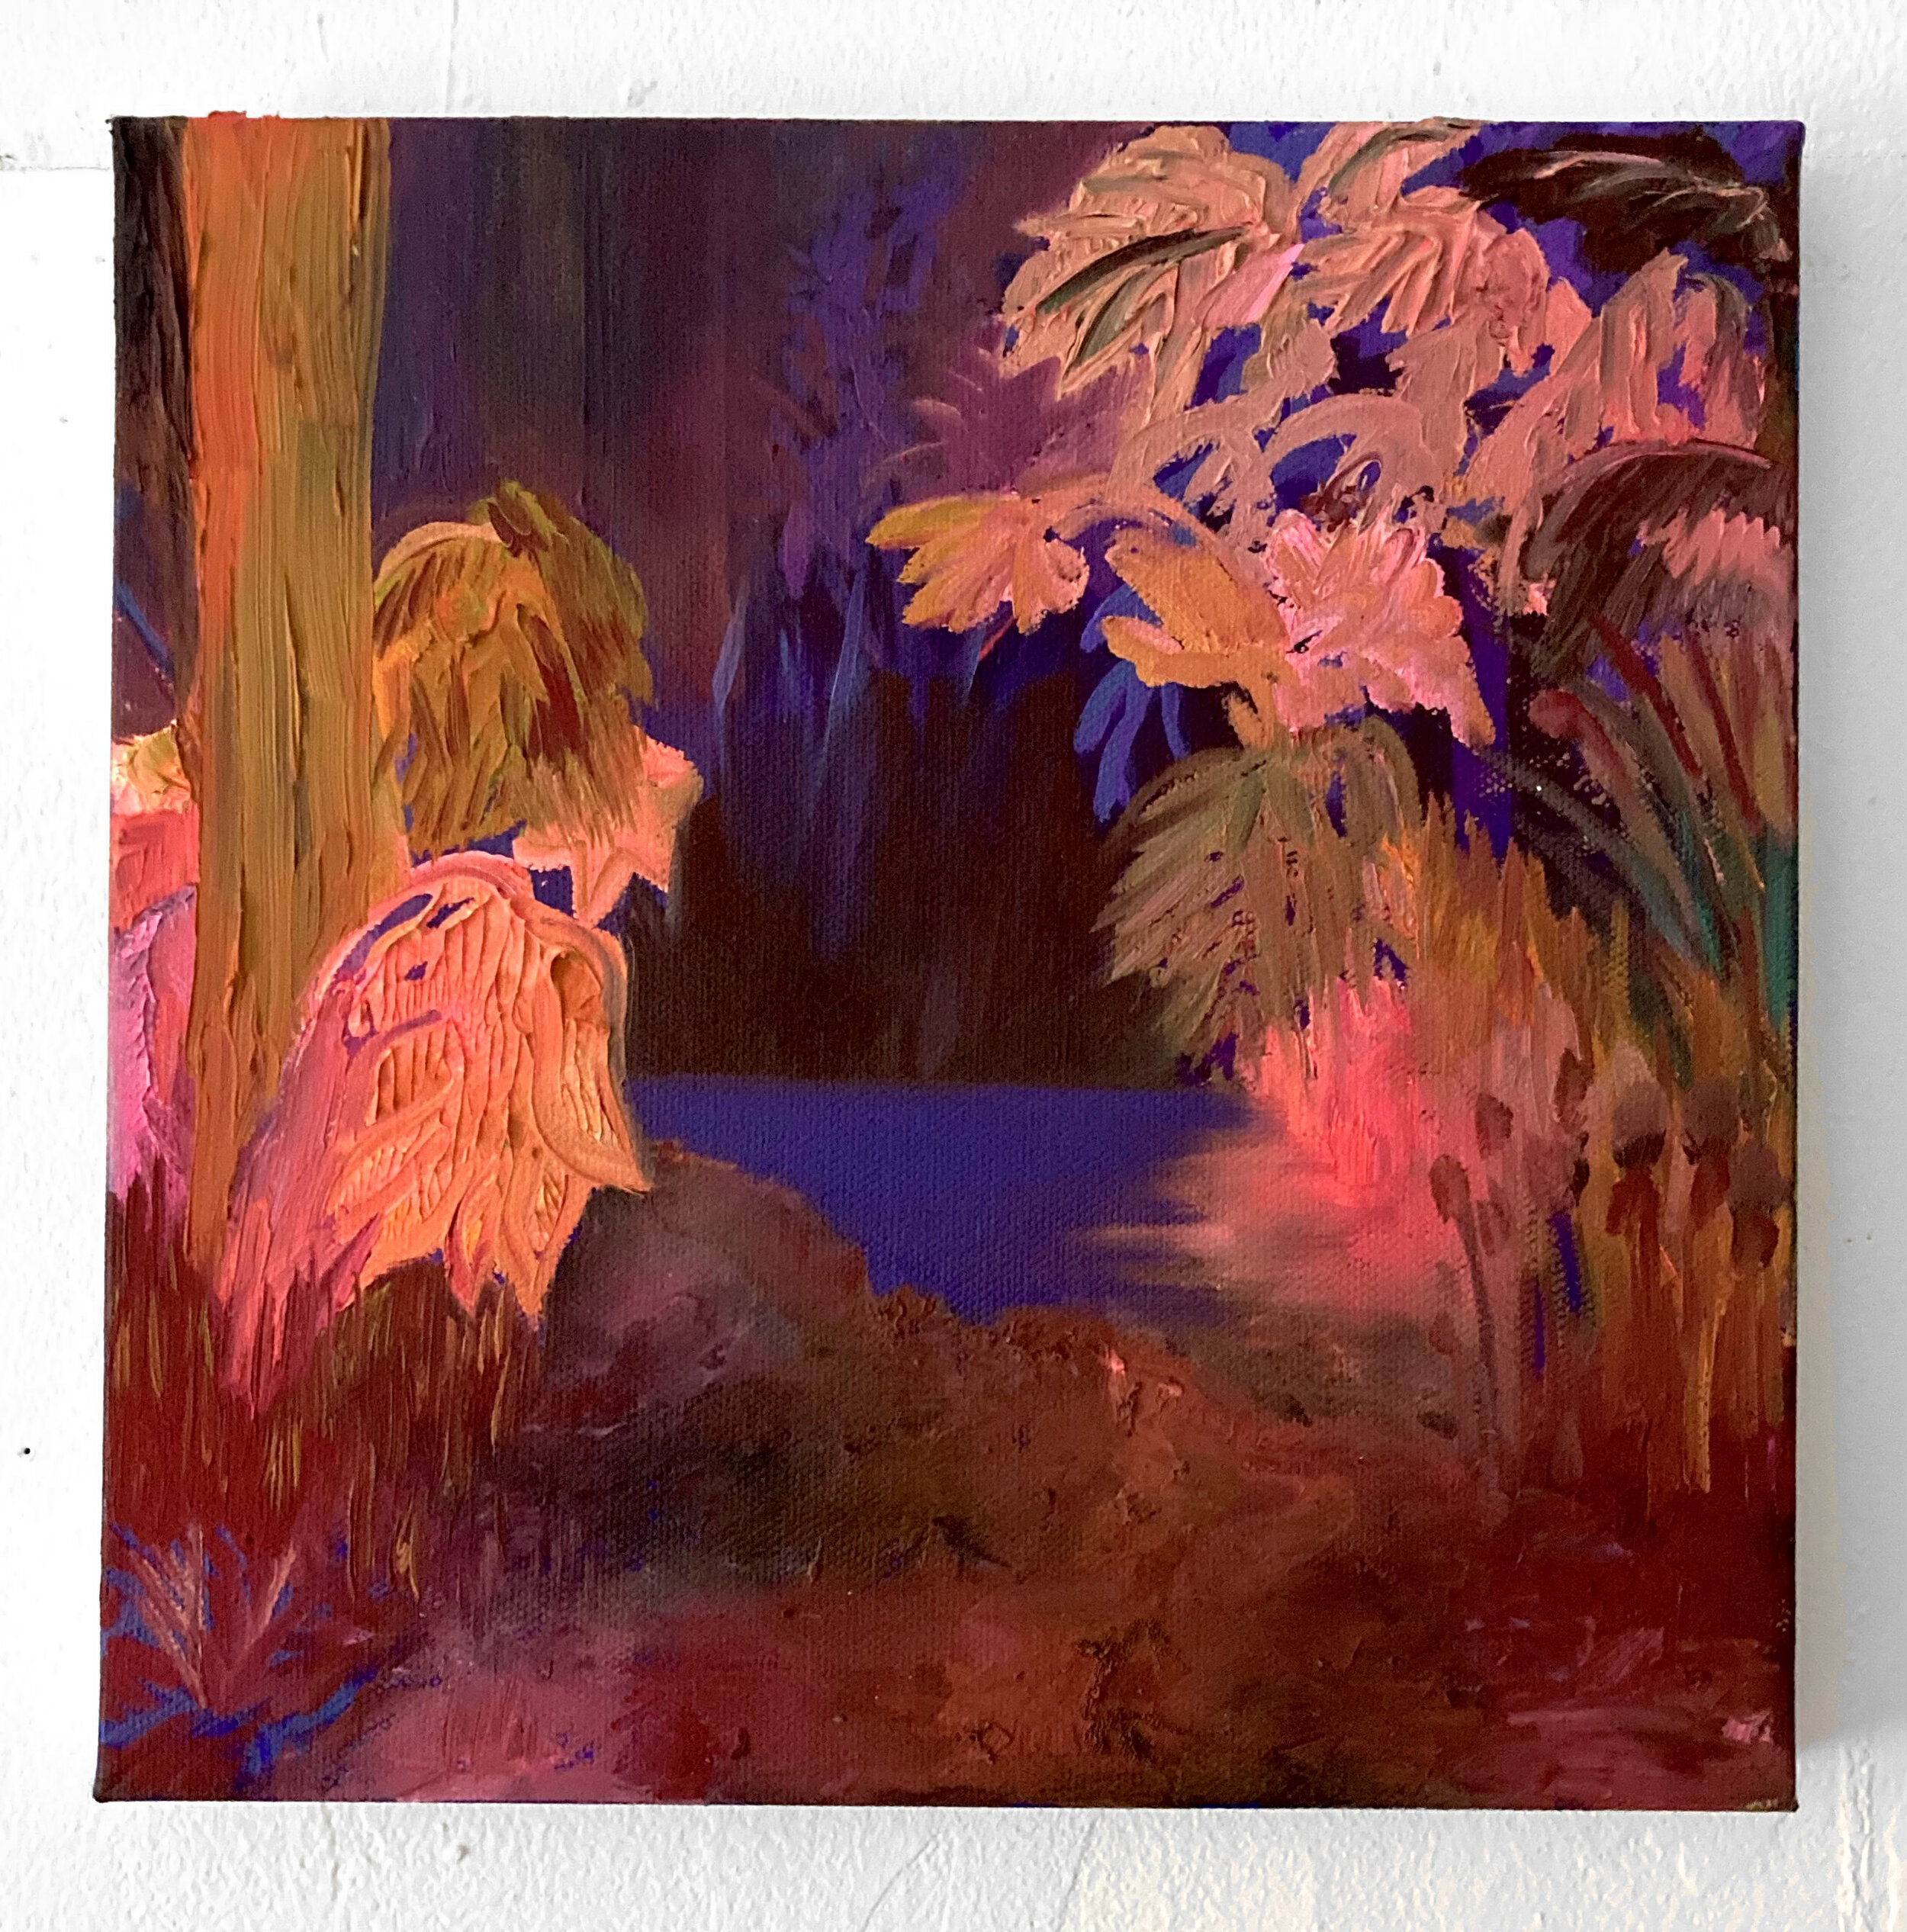   Marsh , 2021, oil on canvas, 12 x 12” 